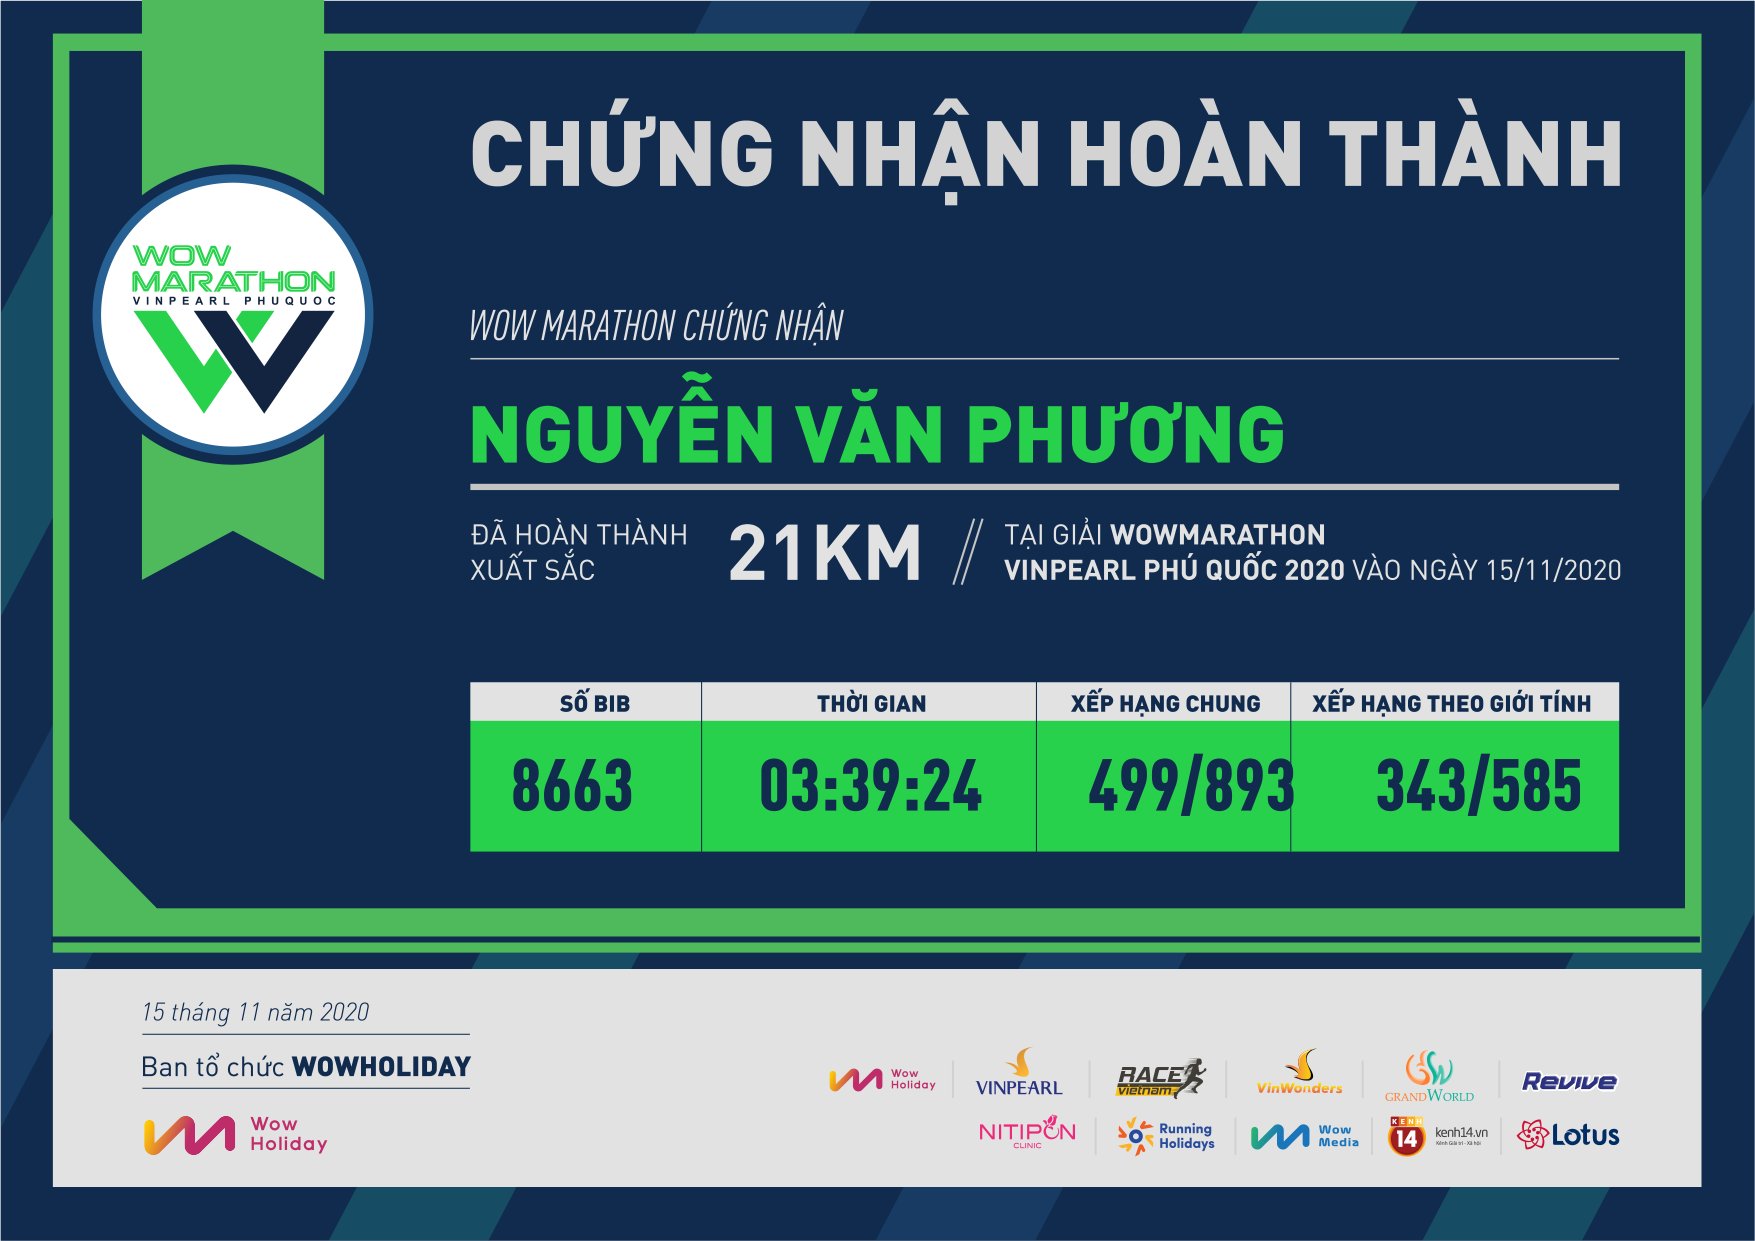 8663 - Nguyễn Văn Phương